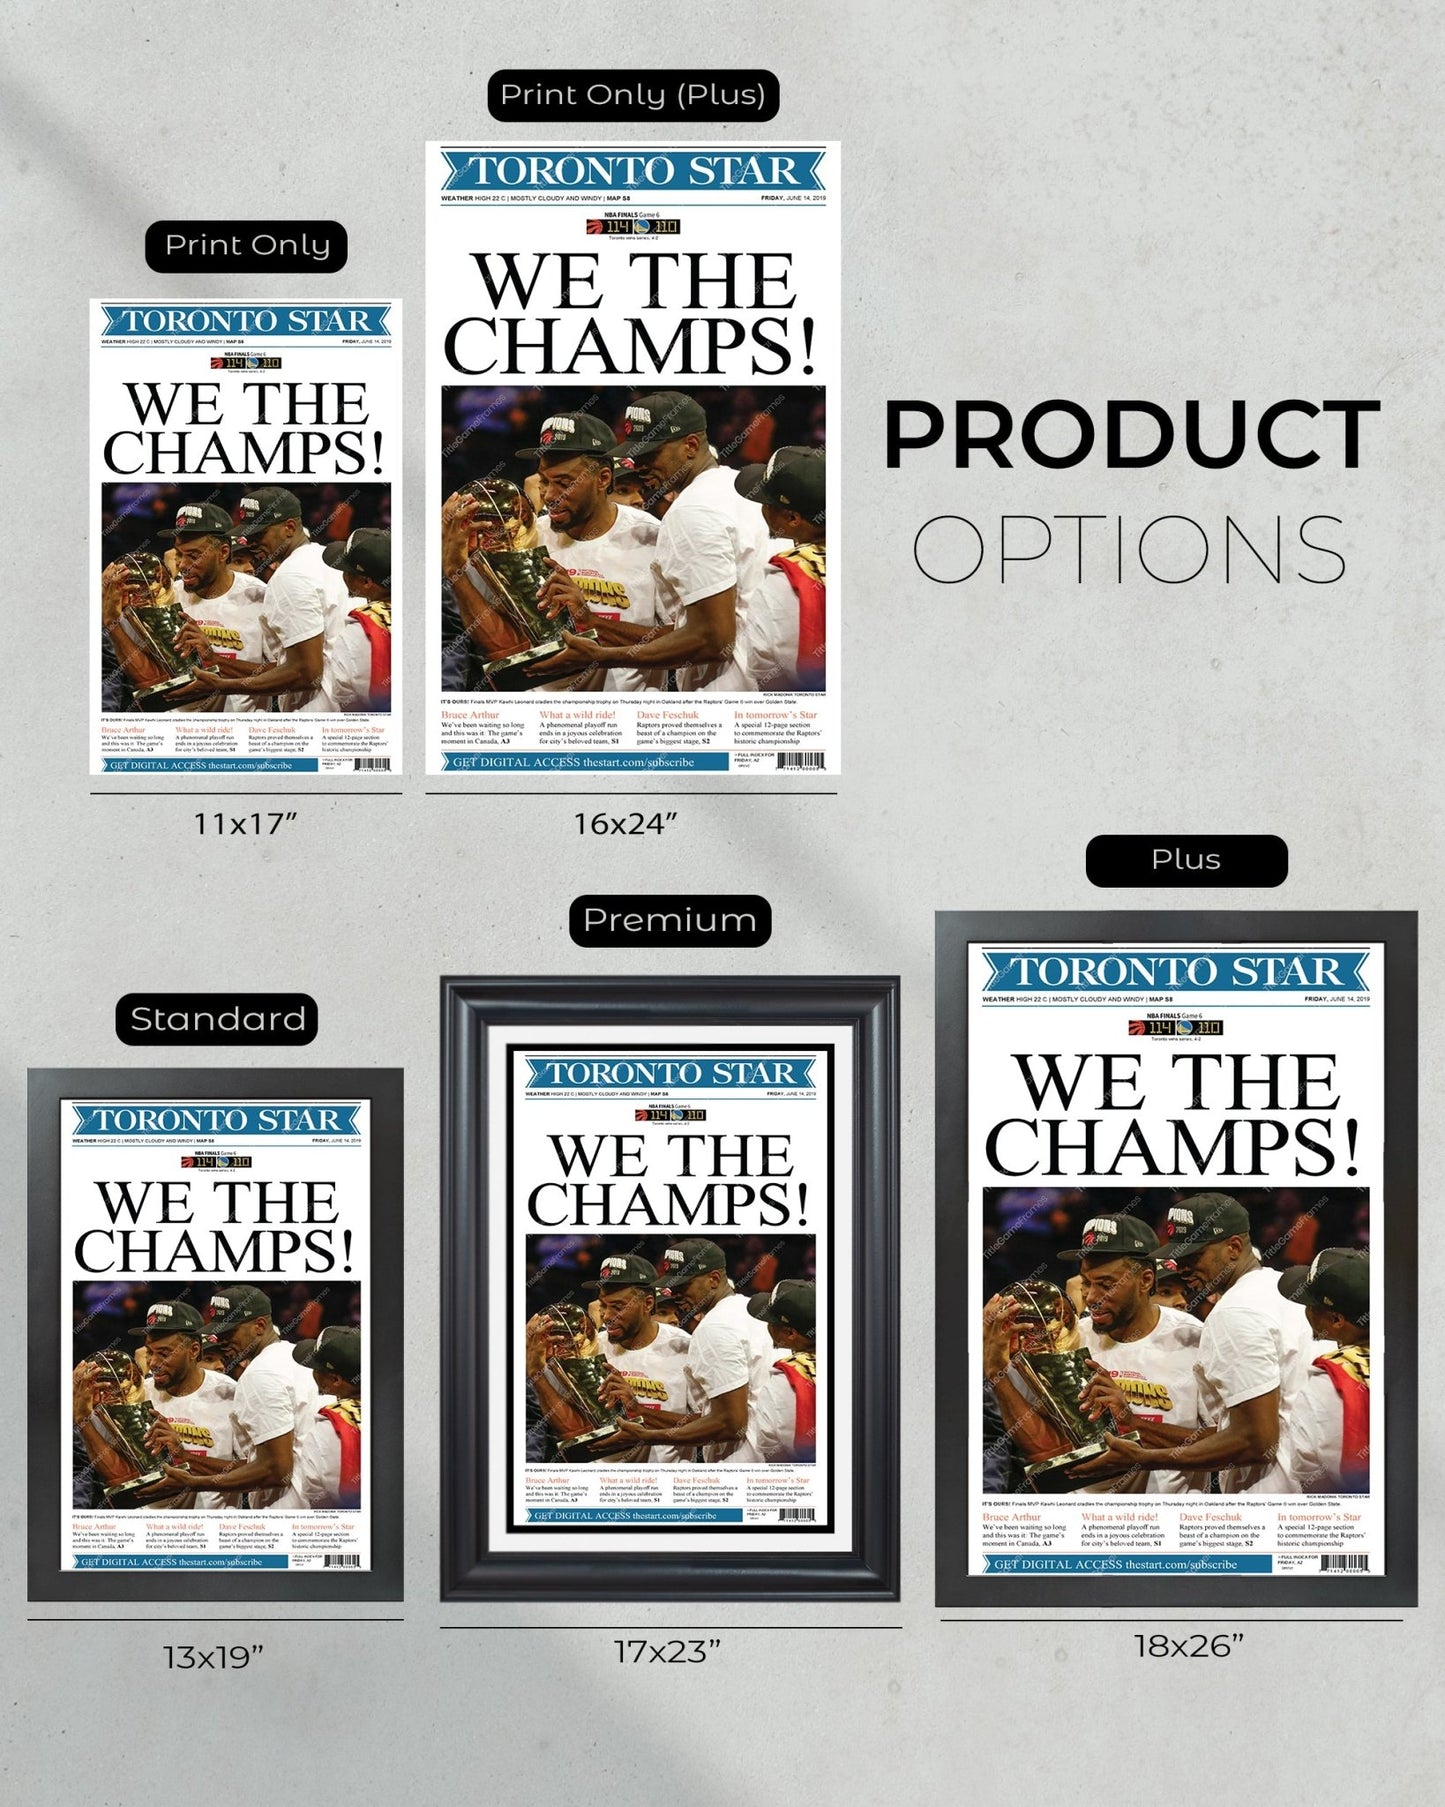 2019 Toronto Raptors NBA championship Framed Newspaper Cover Print - Title Game Frames